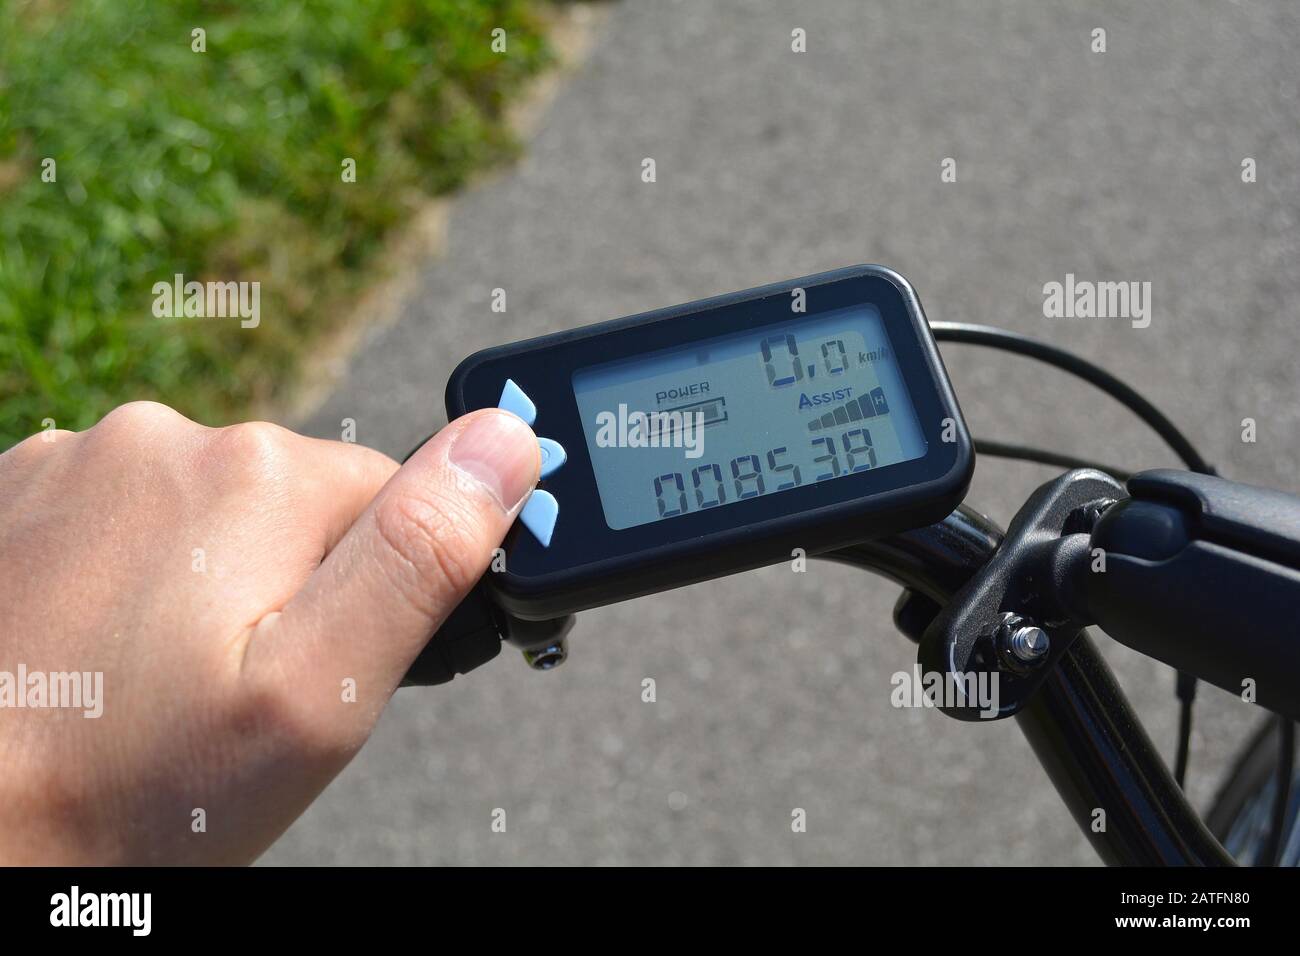 Eine männliche Hand drückt eine Taste auf einem schwarzen elektronischen Fahrrad Roller. Fahrrad Computer auf ein Fahrrad Lenker installiert. Mann sie auf eine Taste e-bike Stockfoto